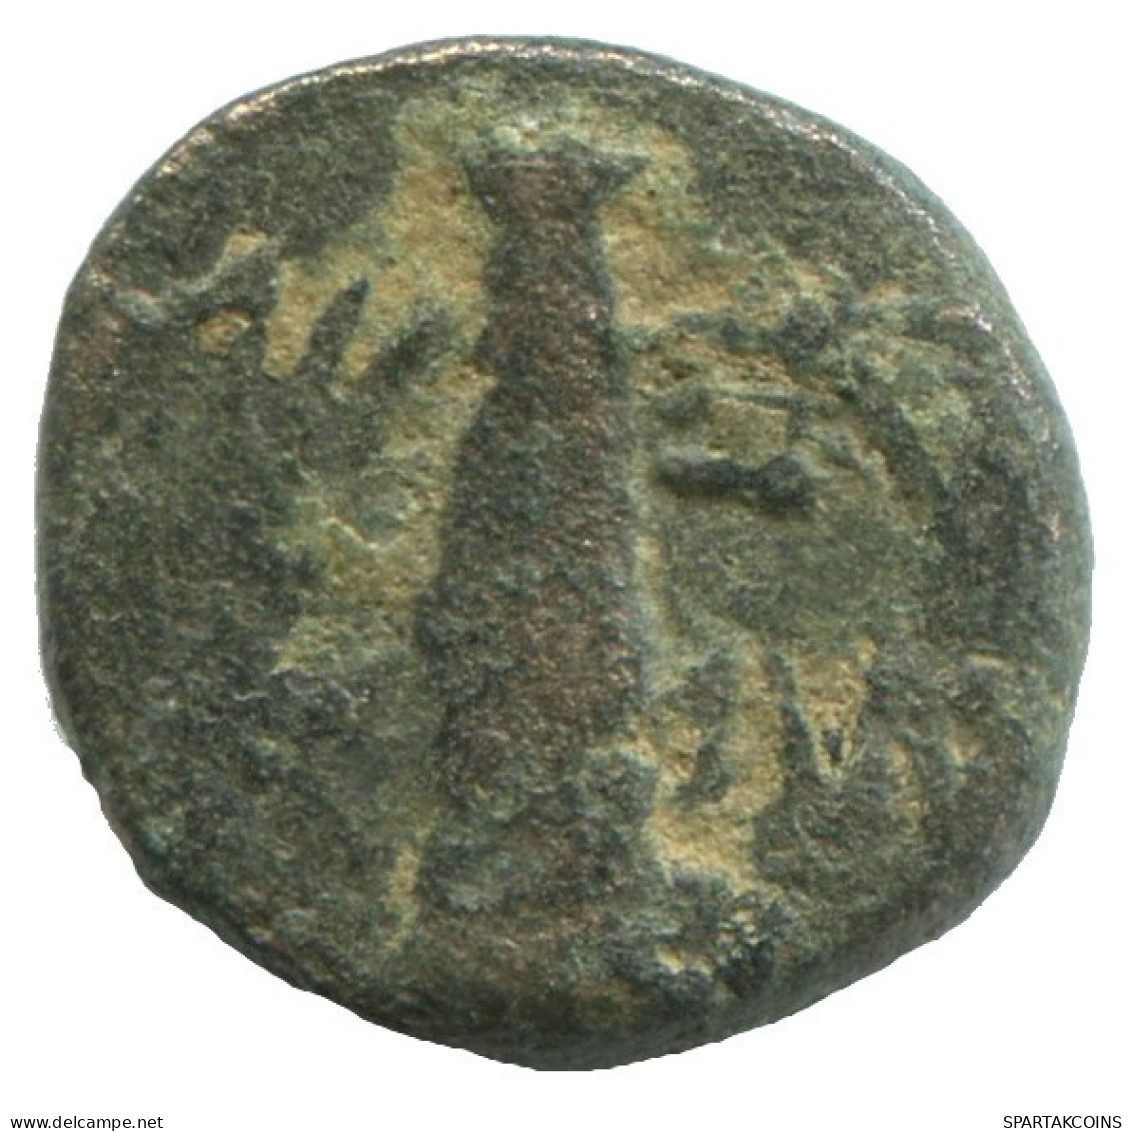 Auténtico Original GRIEGO ANTIGUO Moneda 2g/13mm #NNN1481.9.E.A - Griechische Münzen